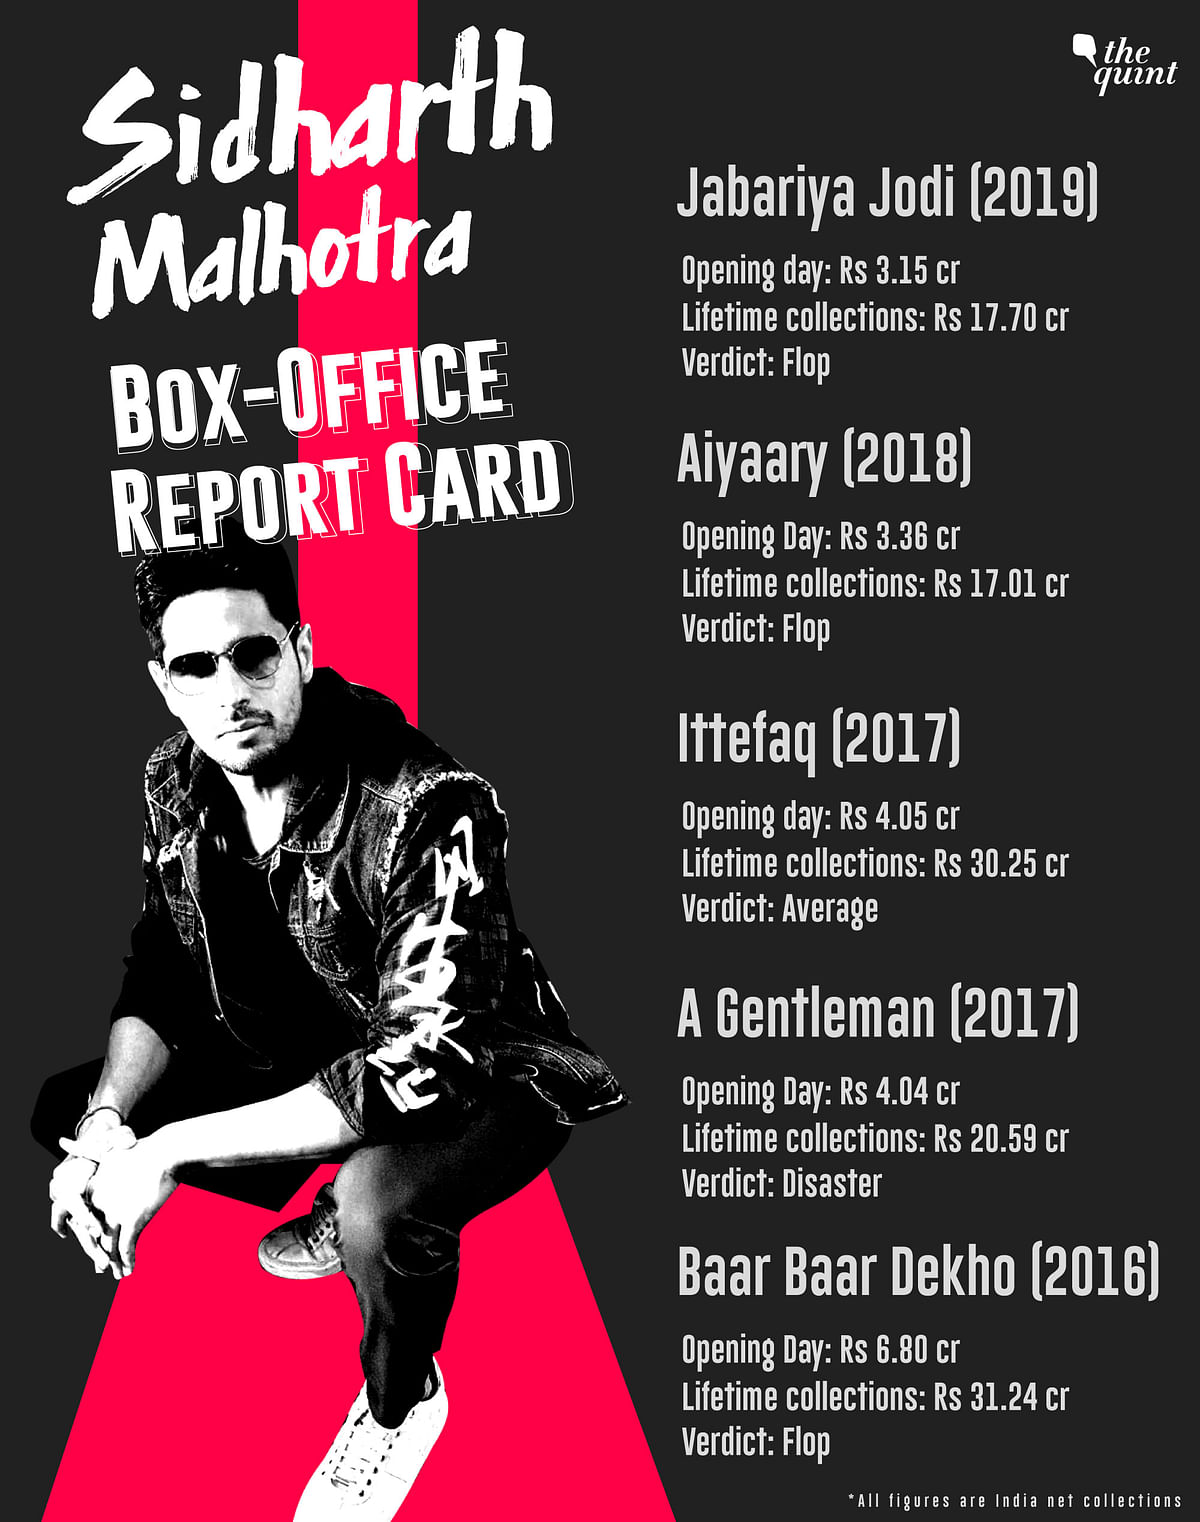 Sidharth Malhotra hasn’t had a solo hit since 2014. 